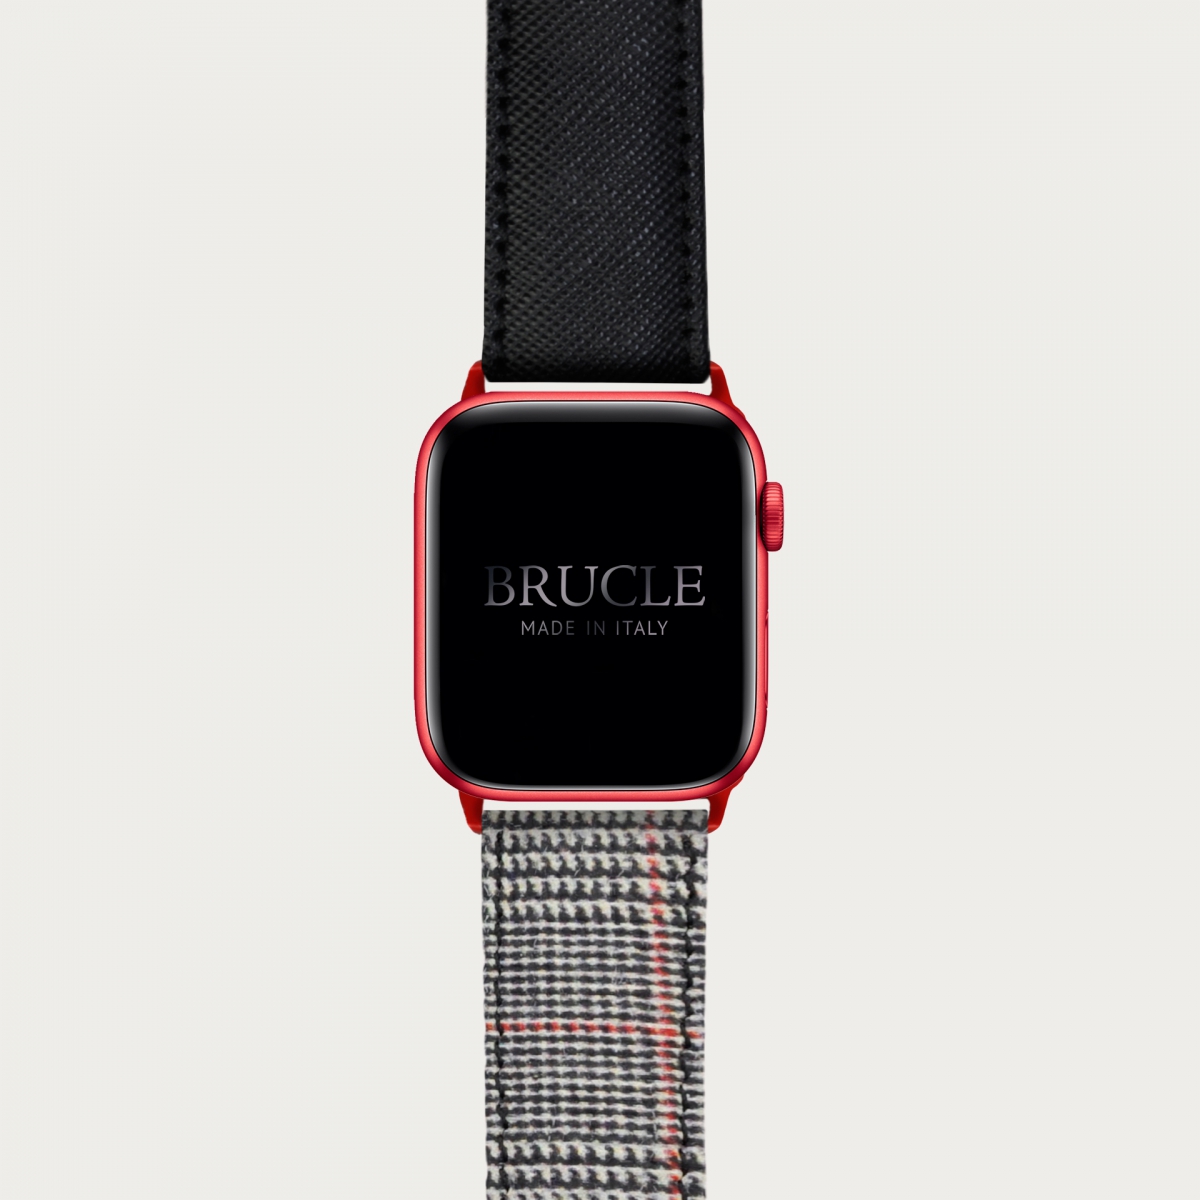 Bracelet en cuir pour montre, Apple Watch et Samsung smartwatch, imprimé Saffiano rouge et motif à chevrons